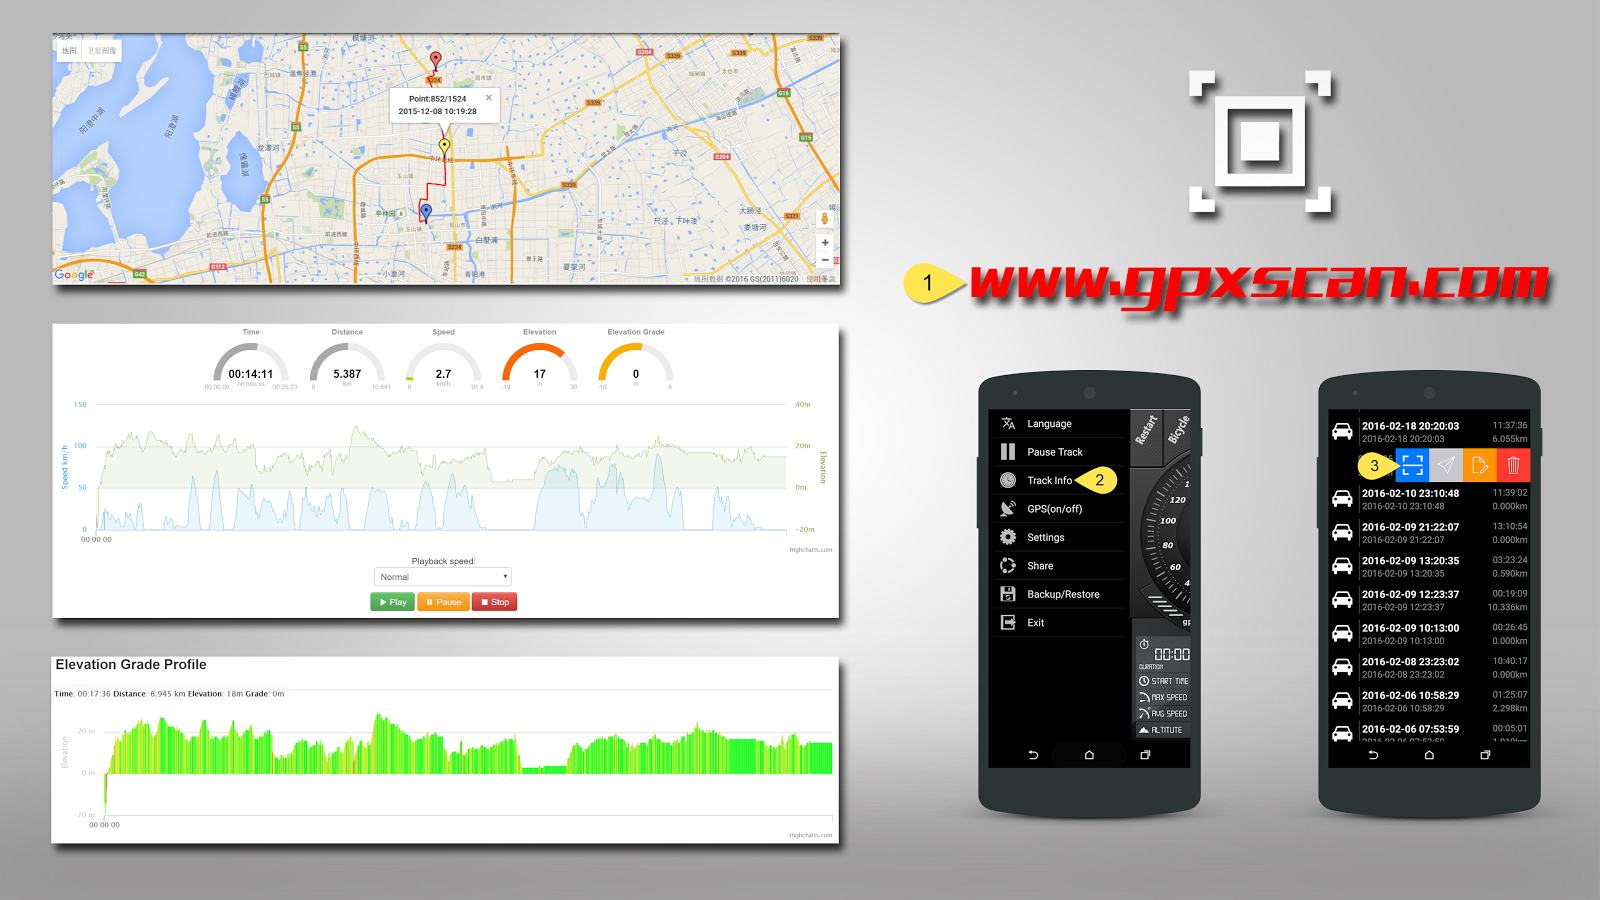 Digital Dashboard GPS Pro